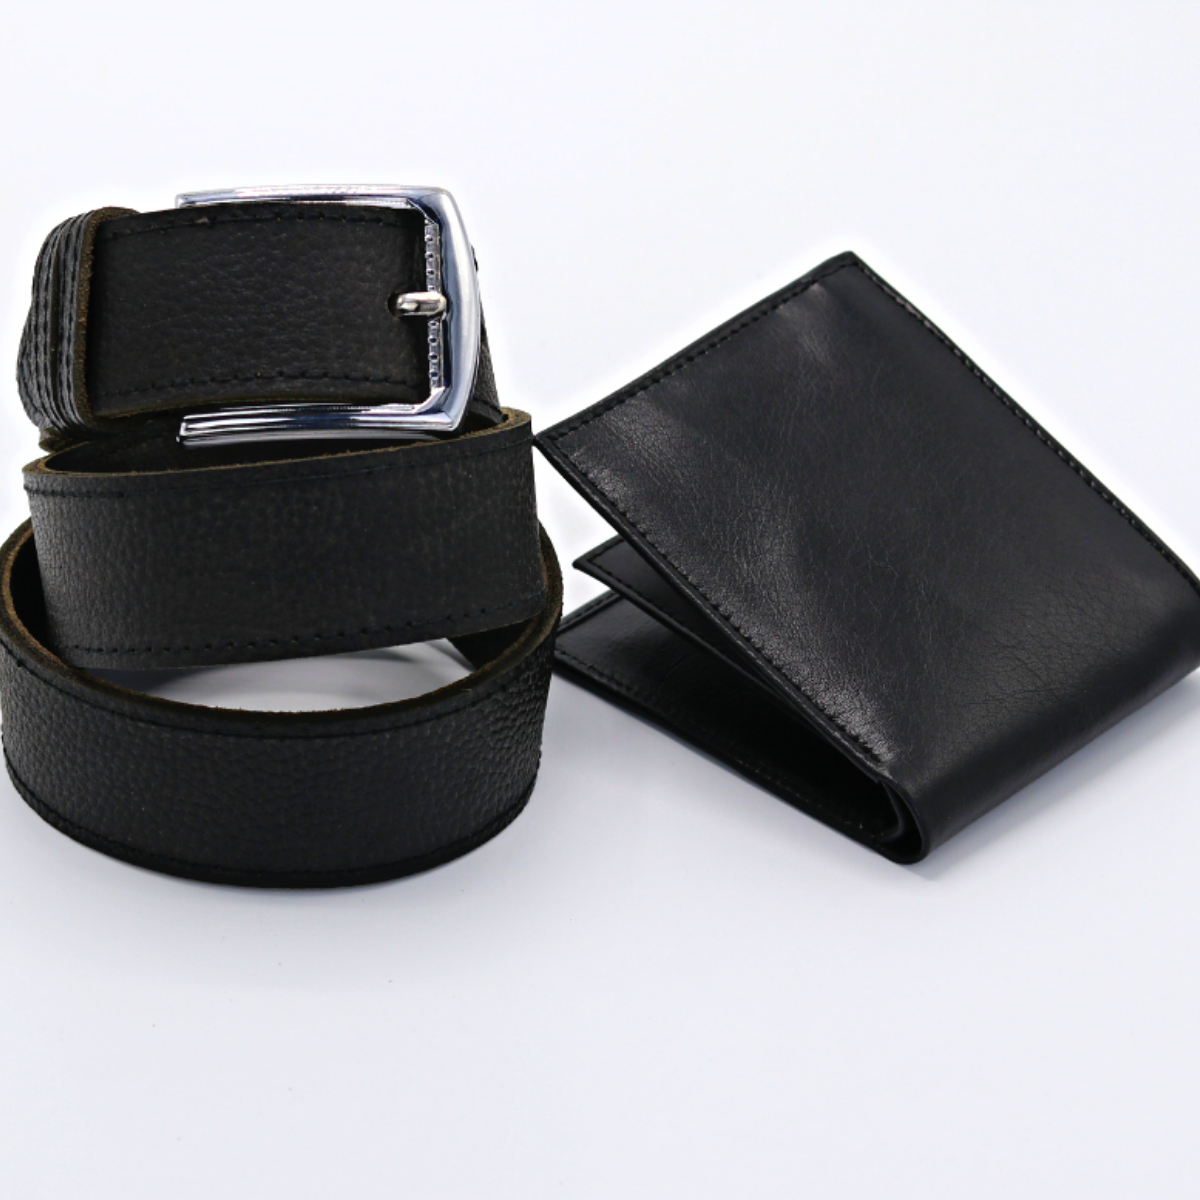 Black Wallet and Slim Belt in Real Leather - Set in Black – Mender ...